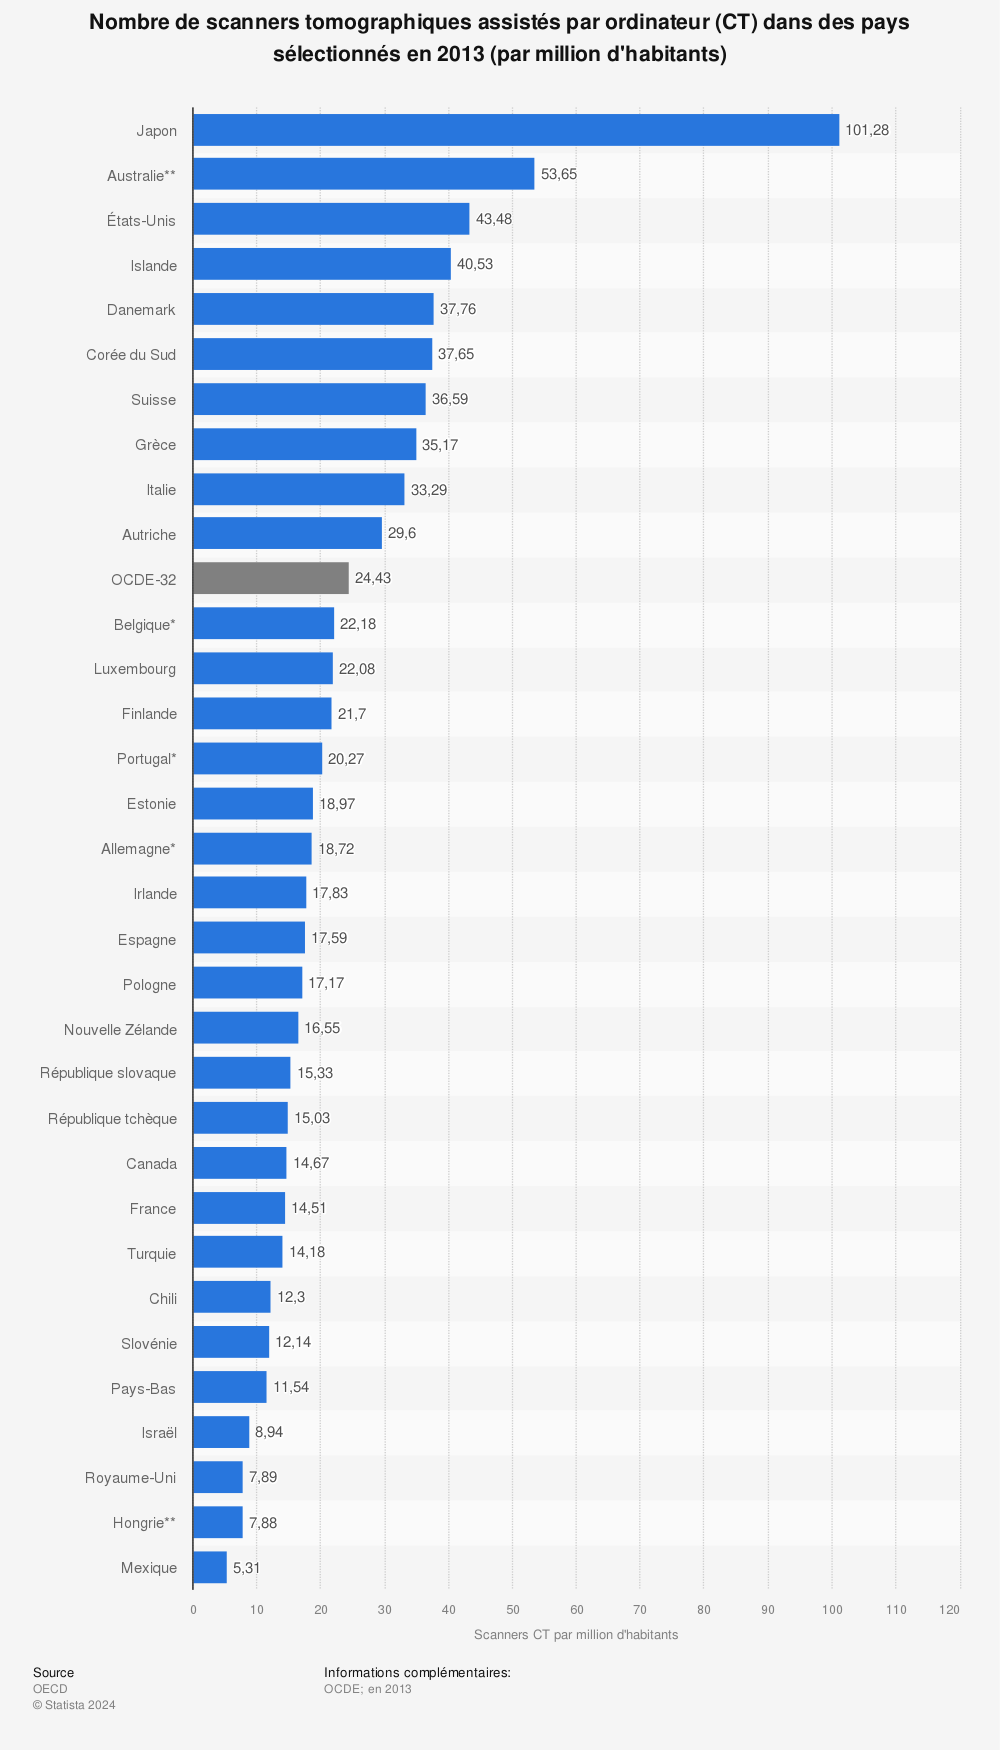 Statistique: Nombre de scanners tomographiques assistés par ordinateur (CT) dans des pays sélectionnés en 2013 (par million d'habitants) | Statista